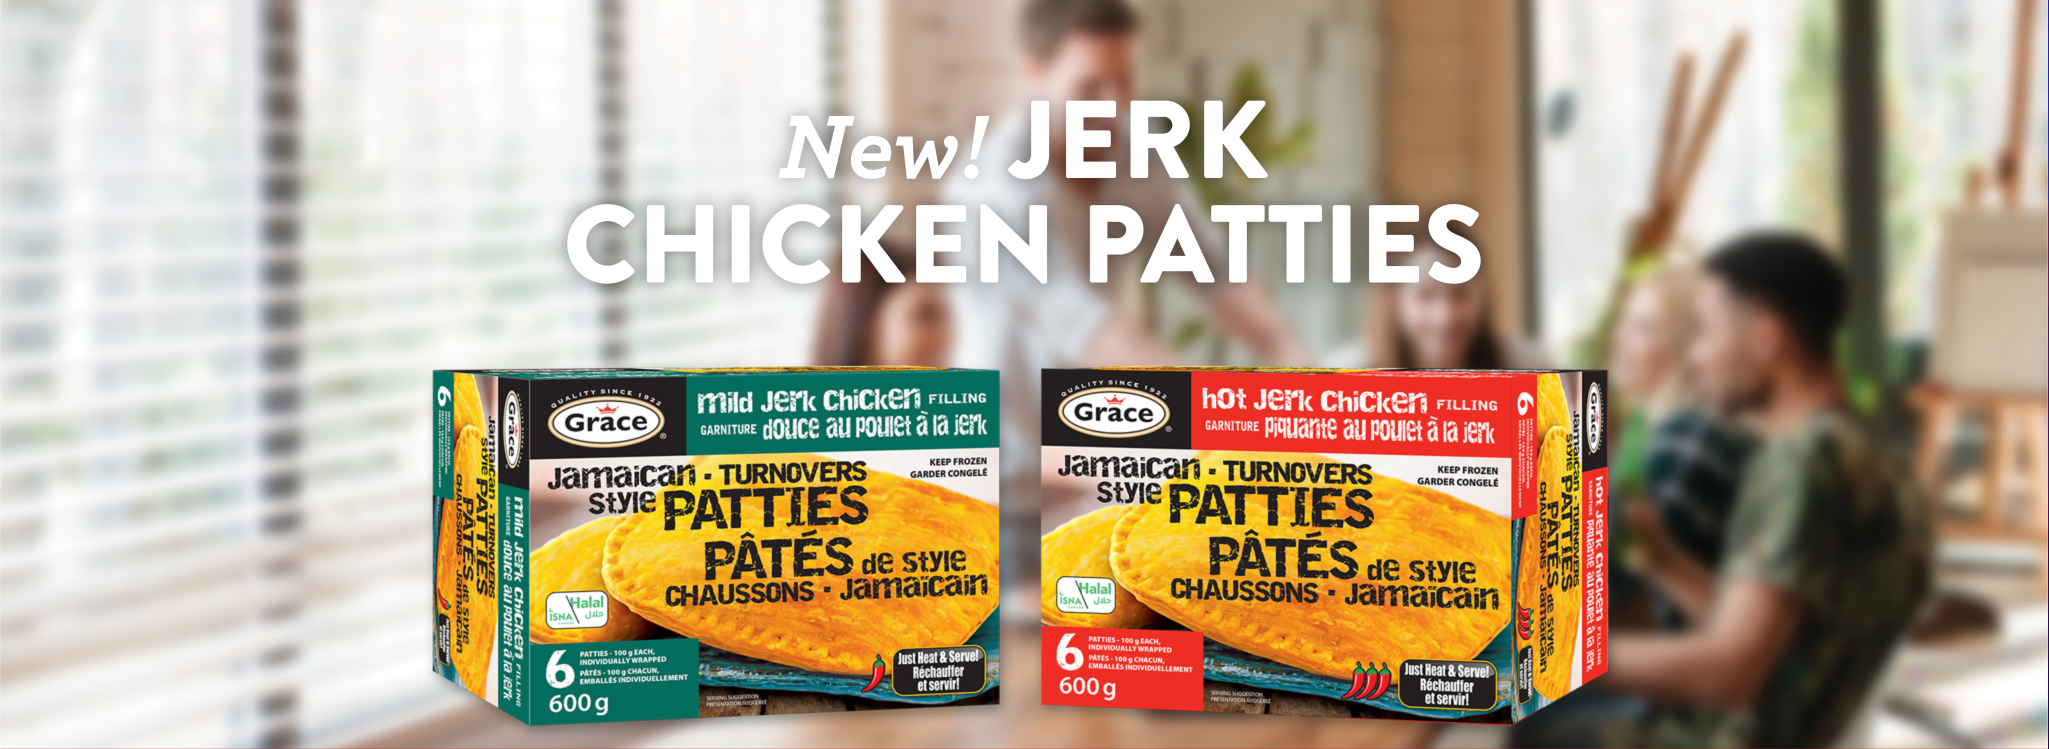 grace-jerk-chicken-patties